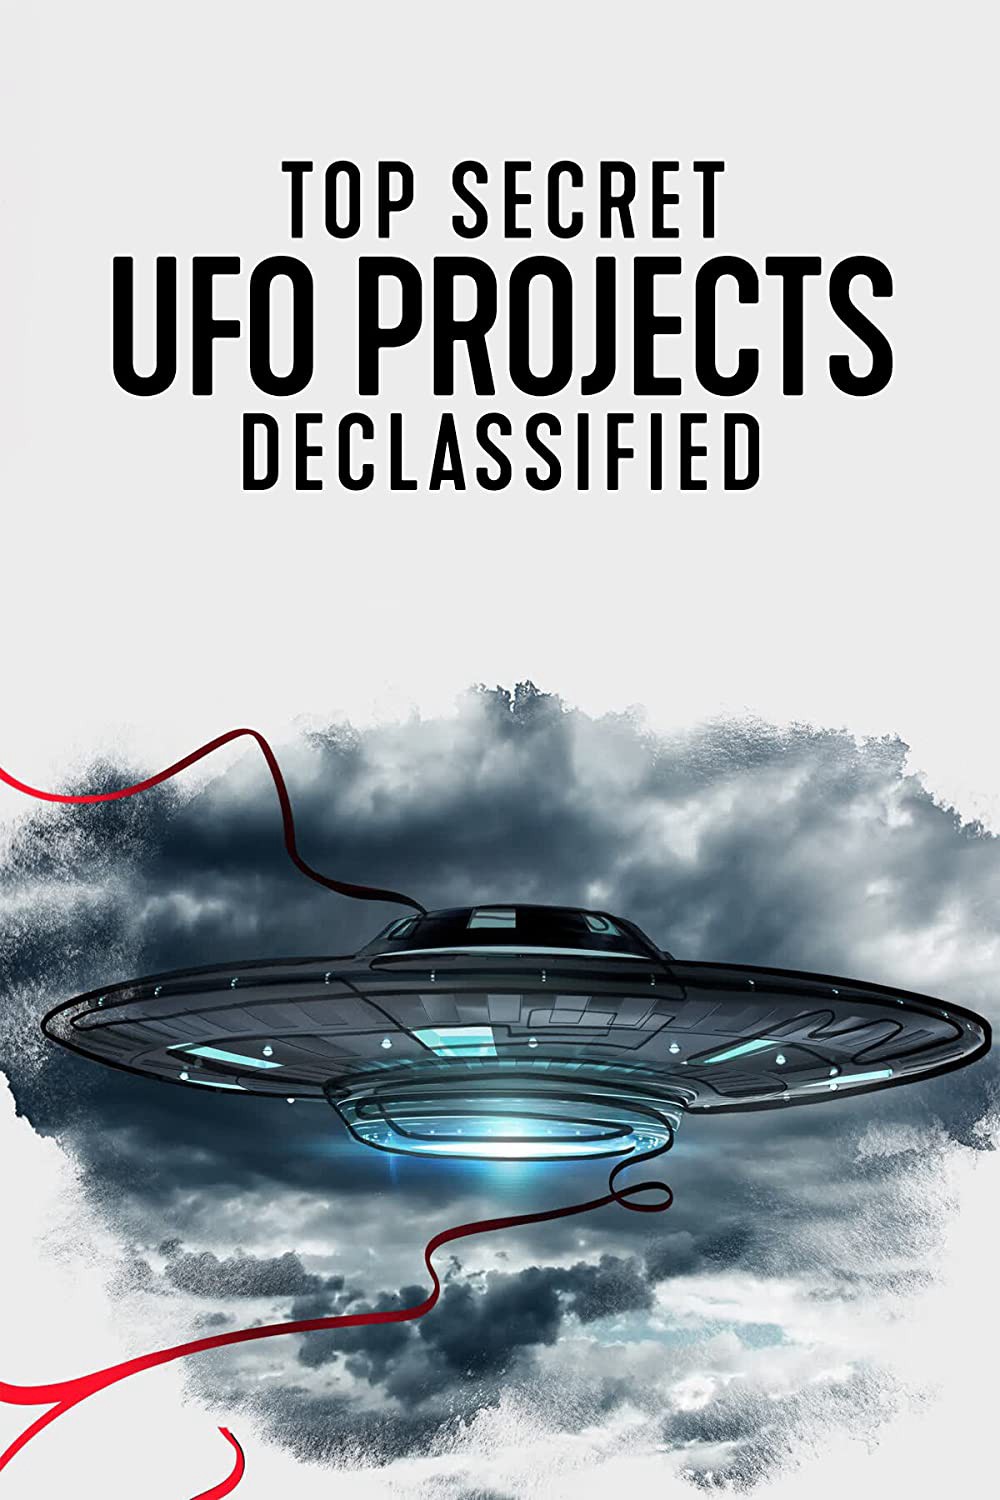 Dự án UFO tuyệt mật: Hé lộ bí ẩn 2021